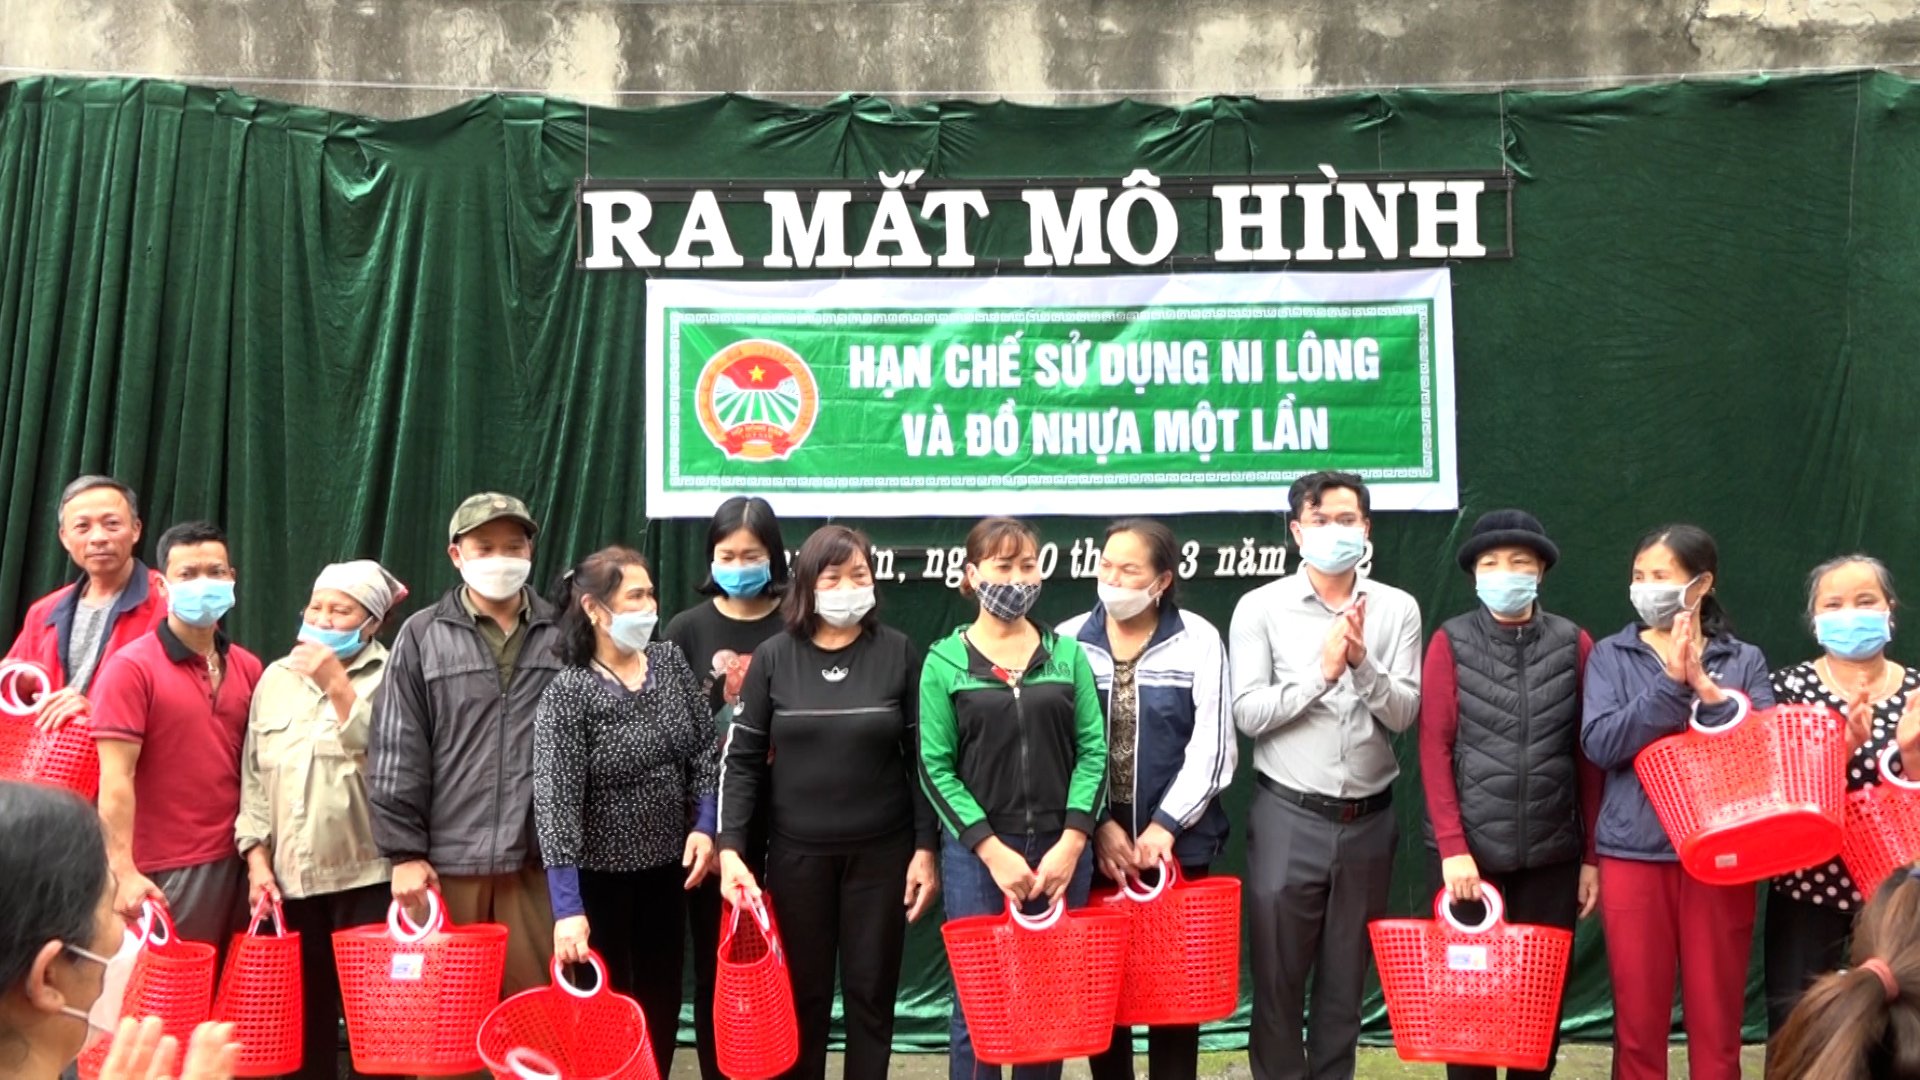 Hội Nông dân phường Nam Sơn ra mắt mô hình hạn chế sử dụng túi nilon và đồ nhựa một lần